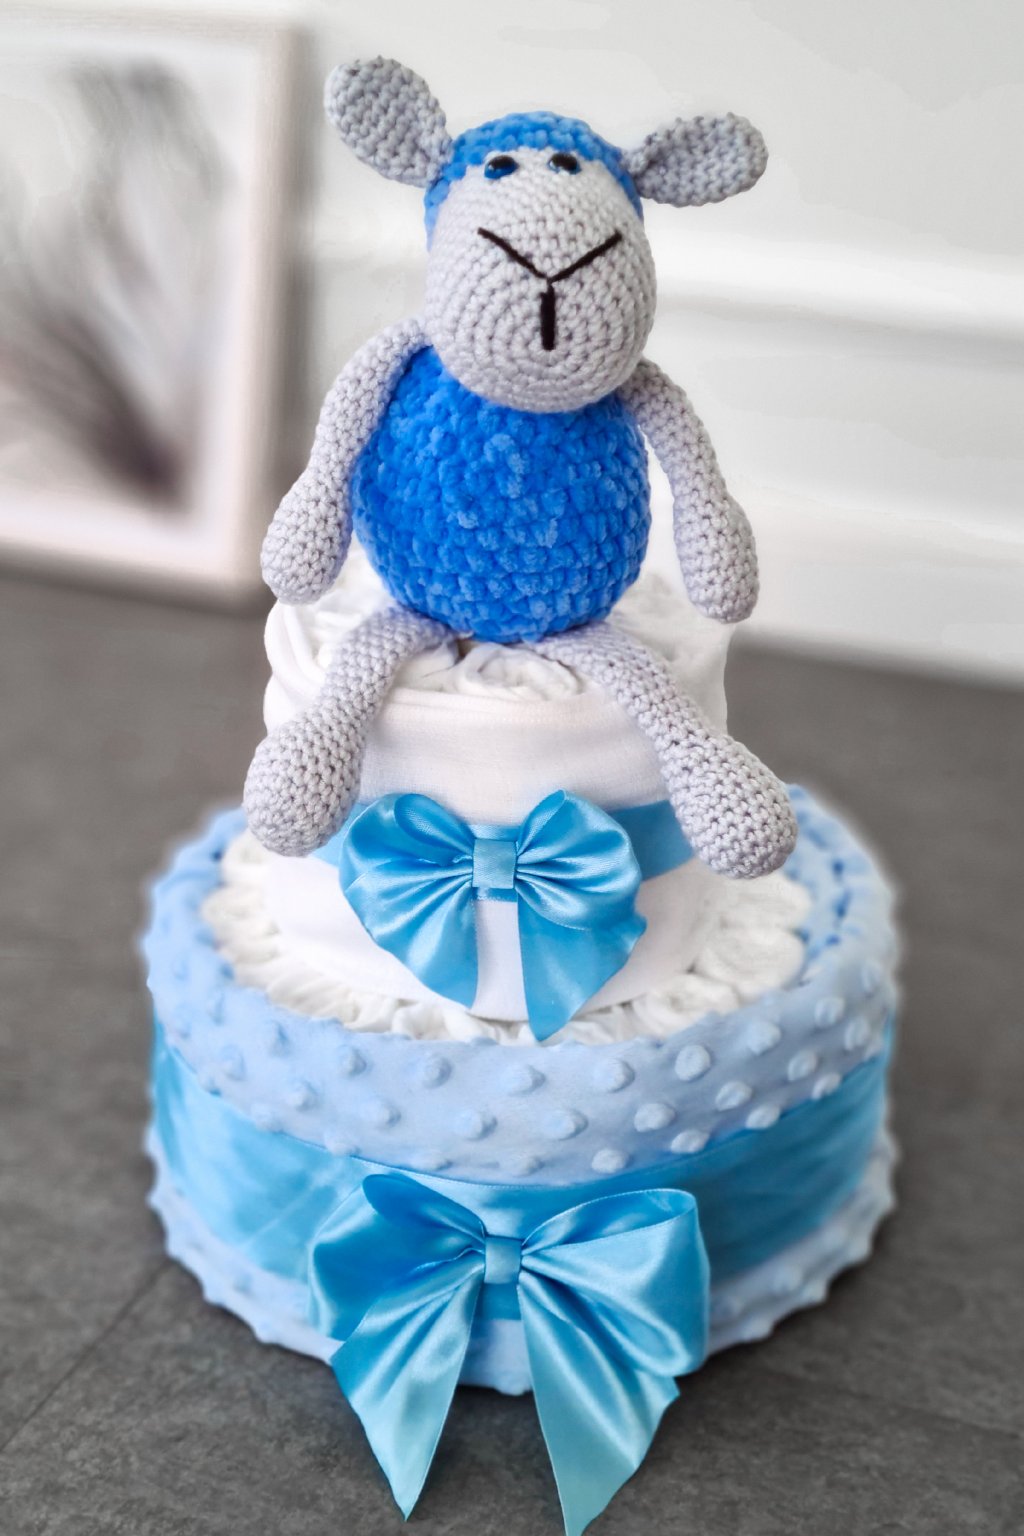 Plenkový dort s modrou ovečkou | kreativní dorty z plenek